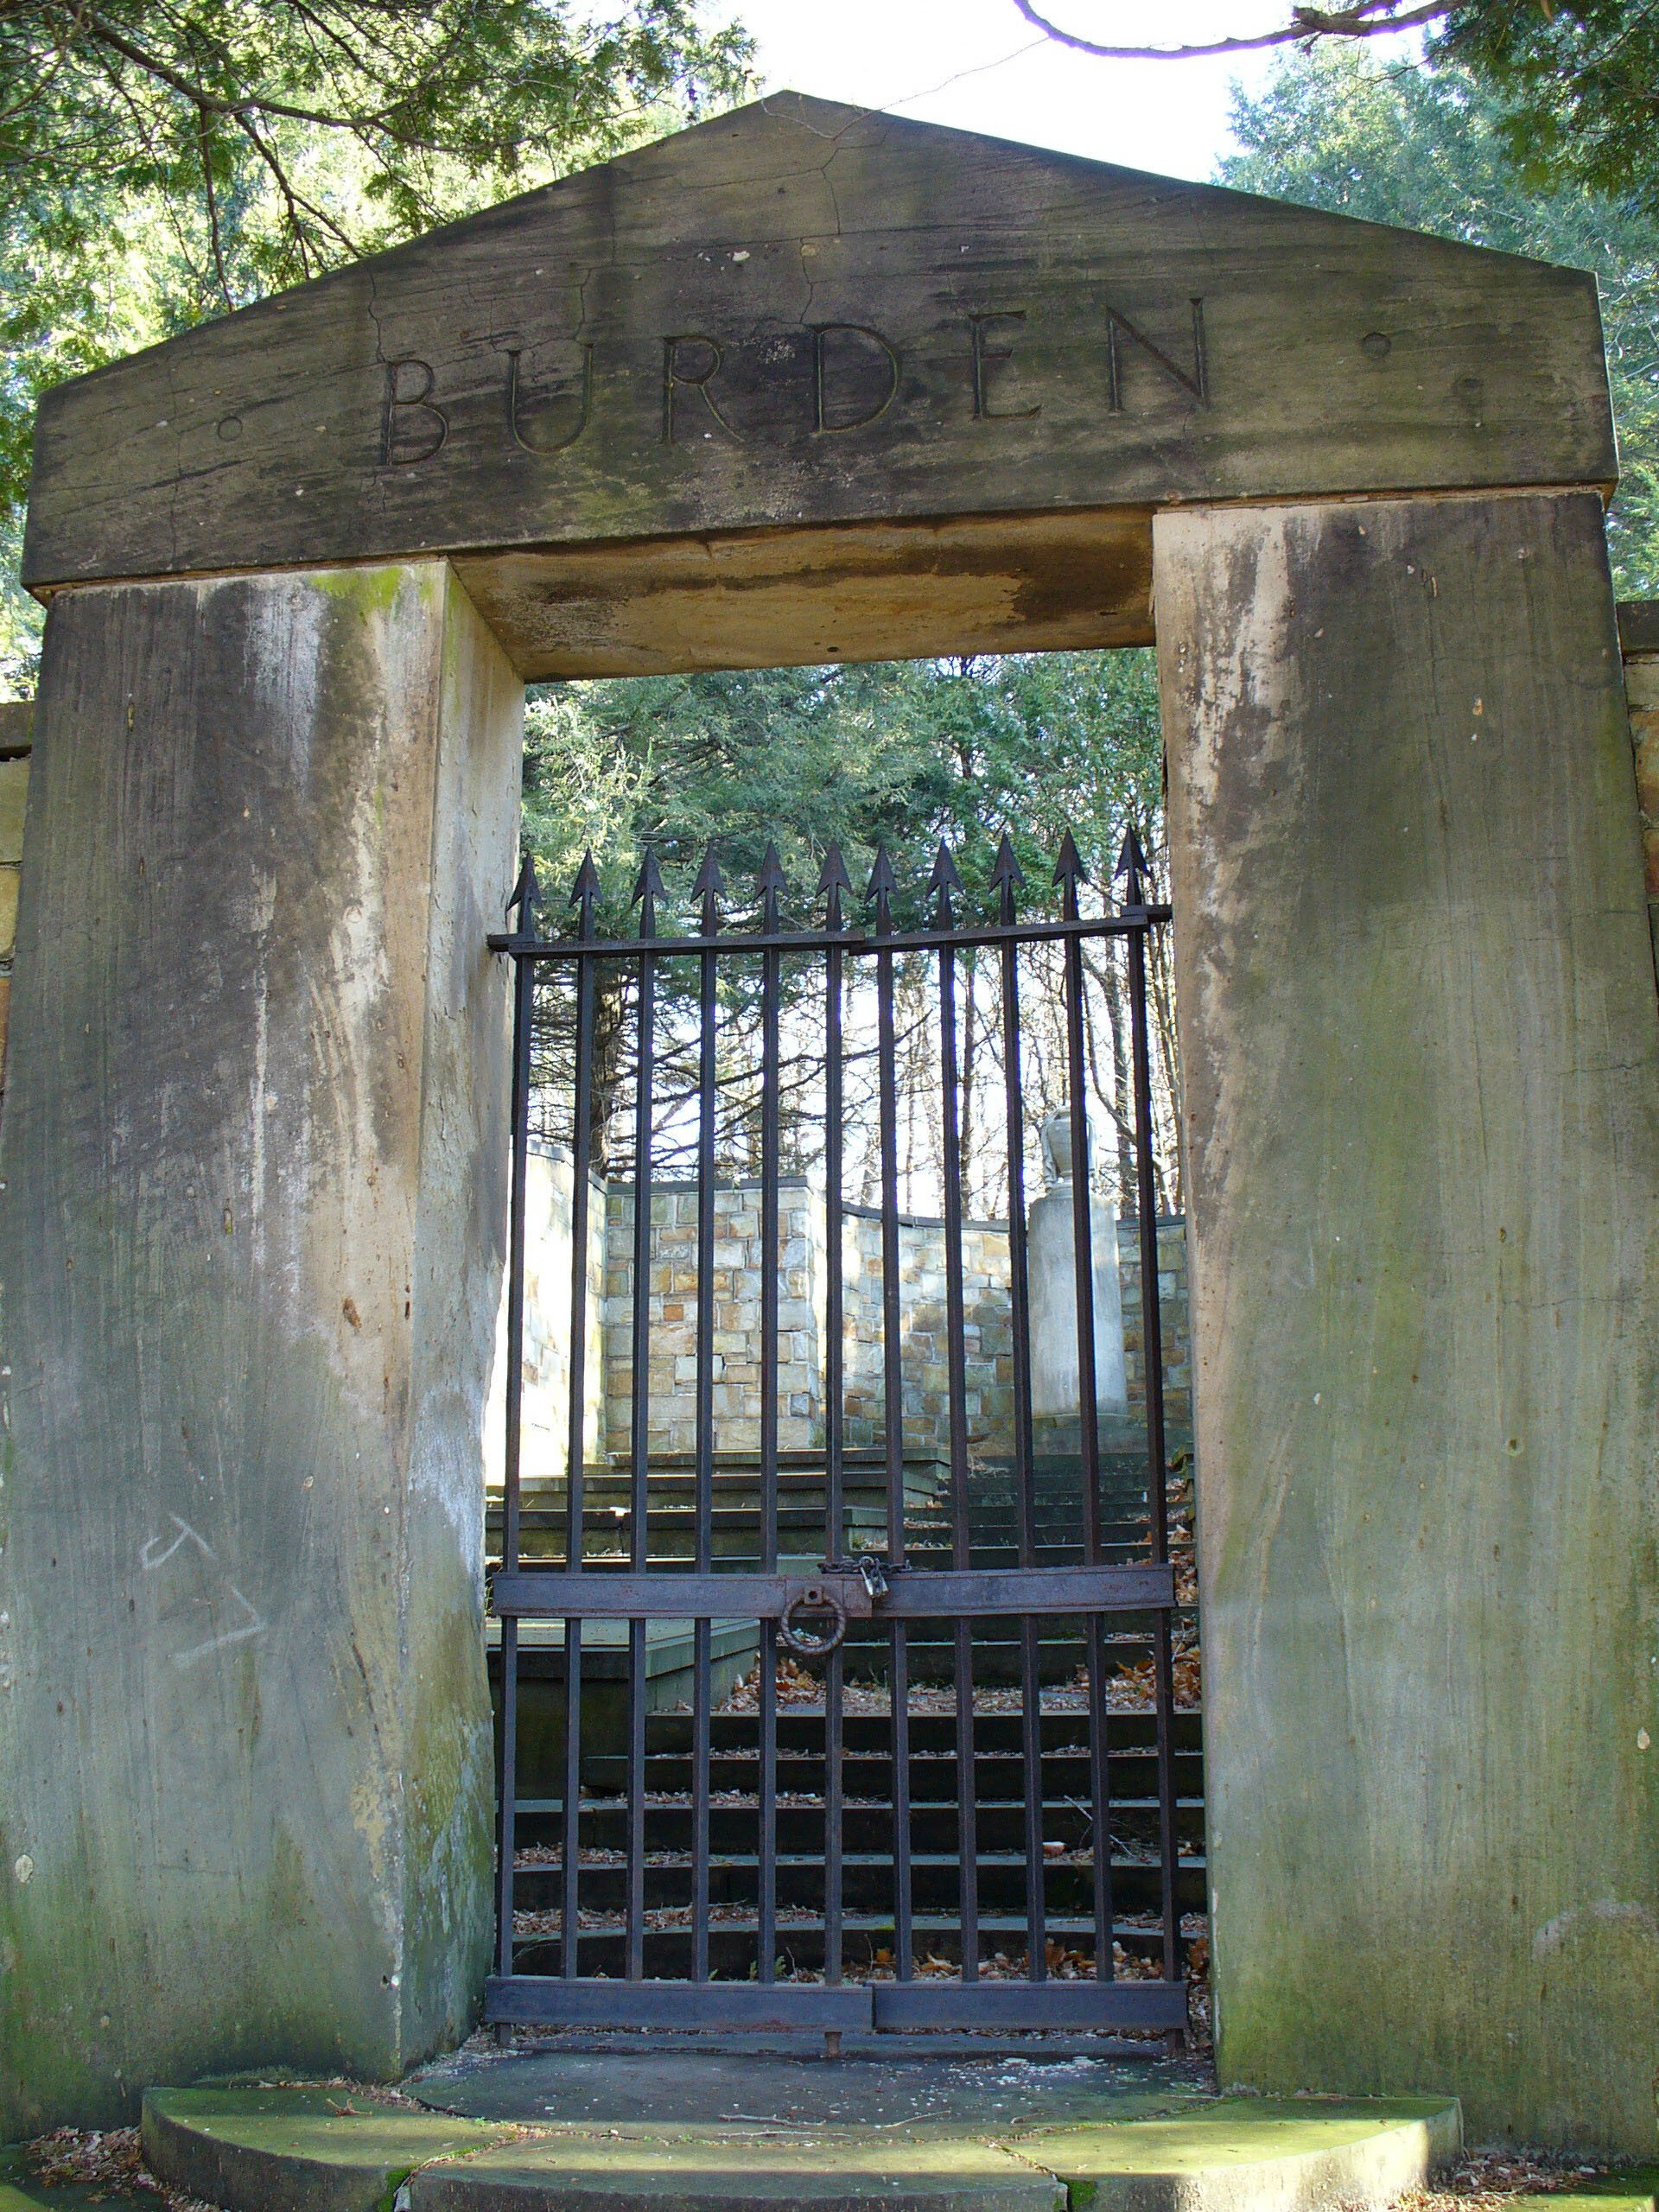 The Burden Mausoleum